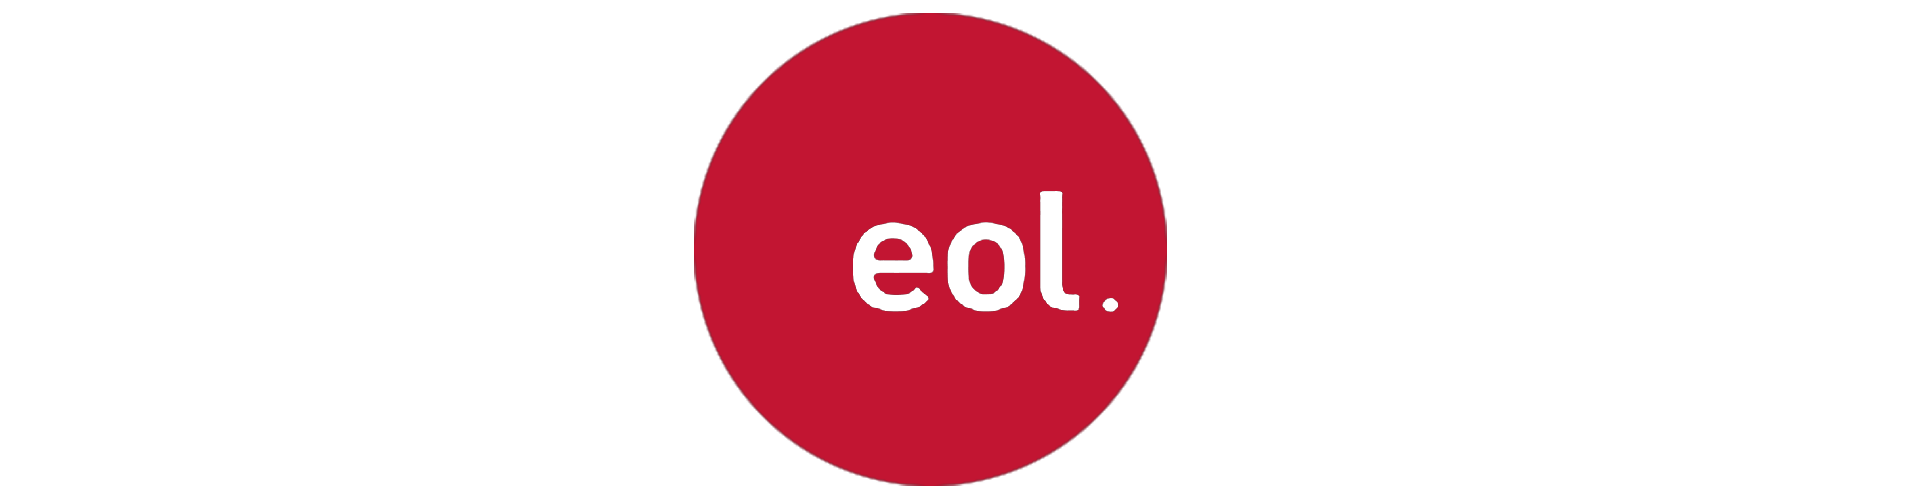 eol